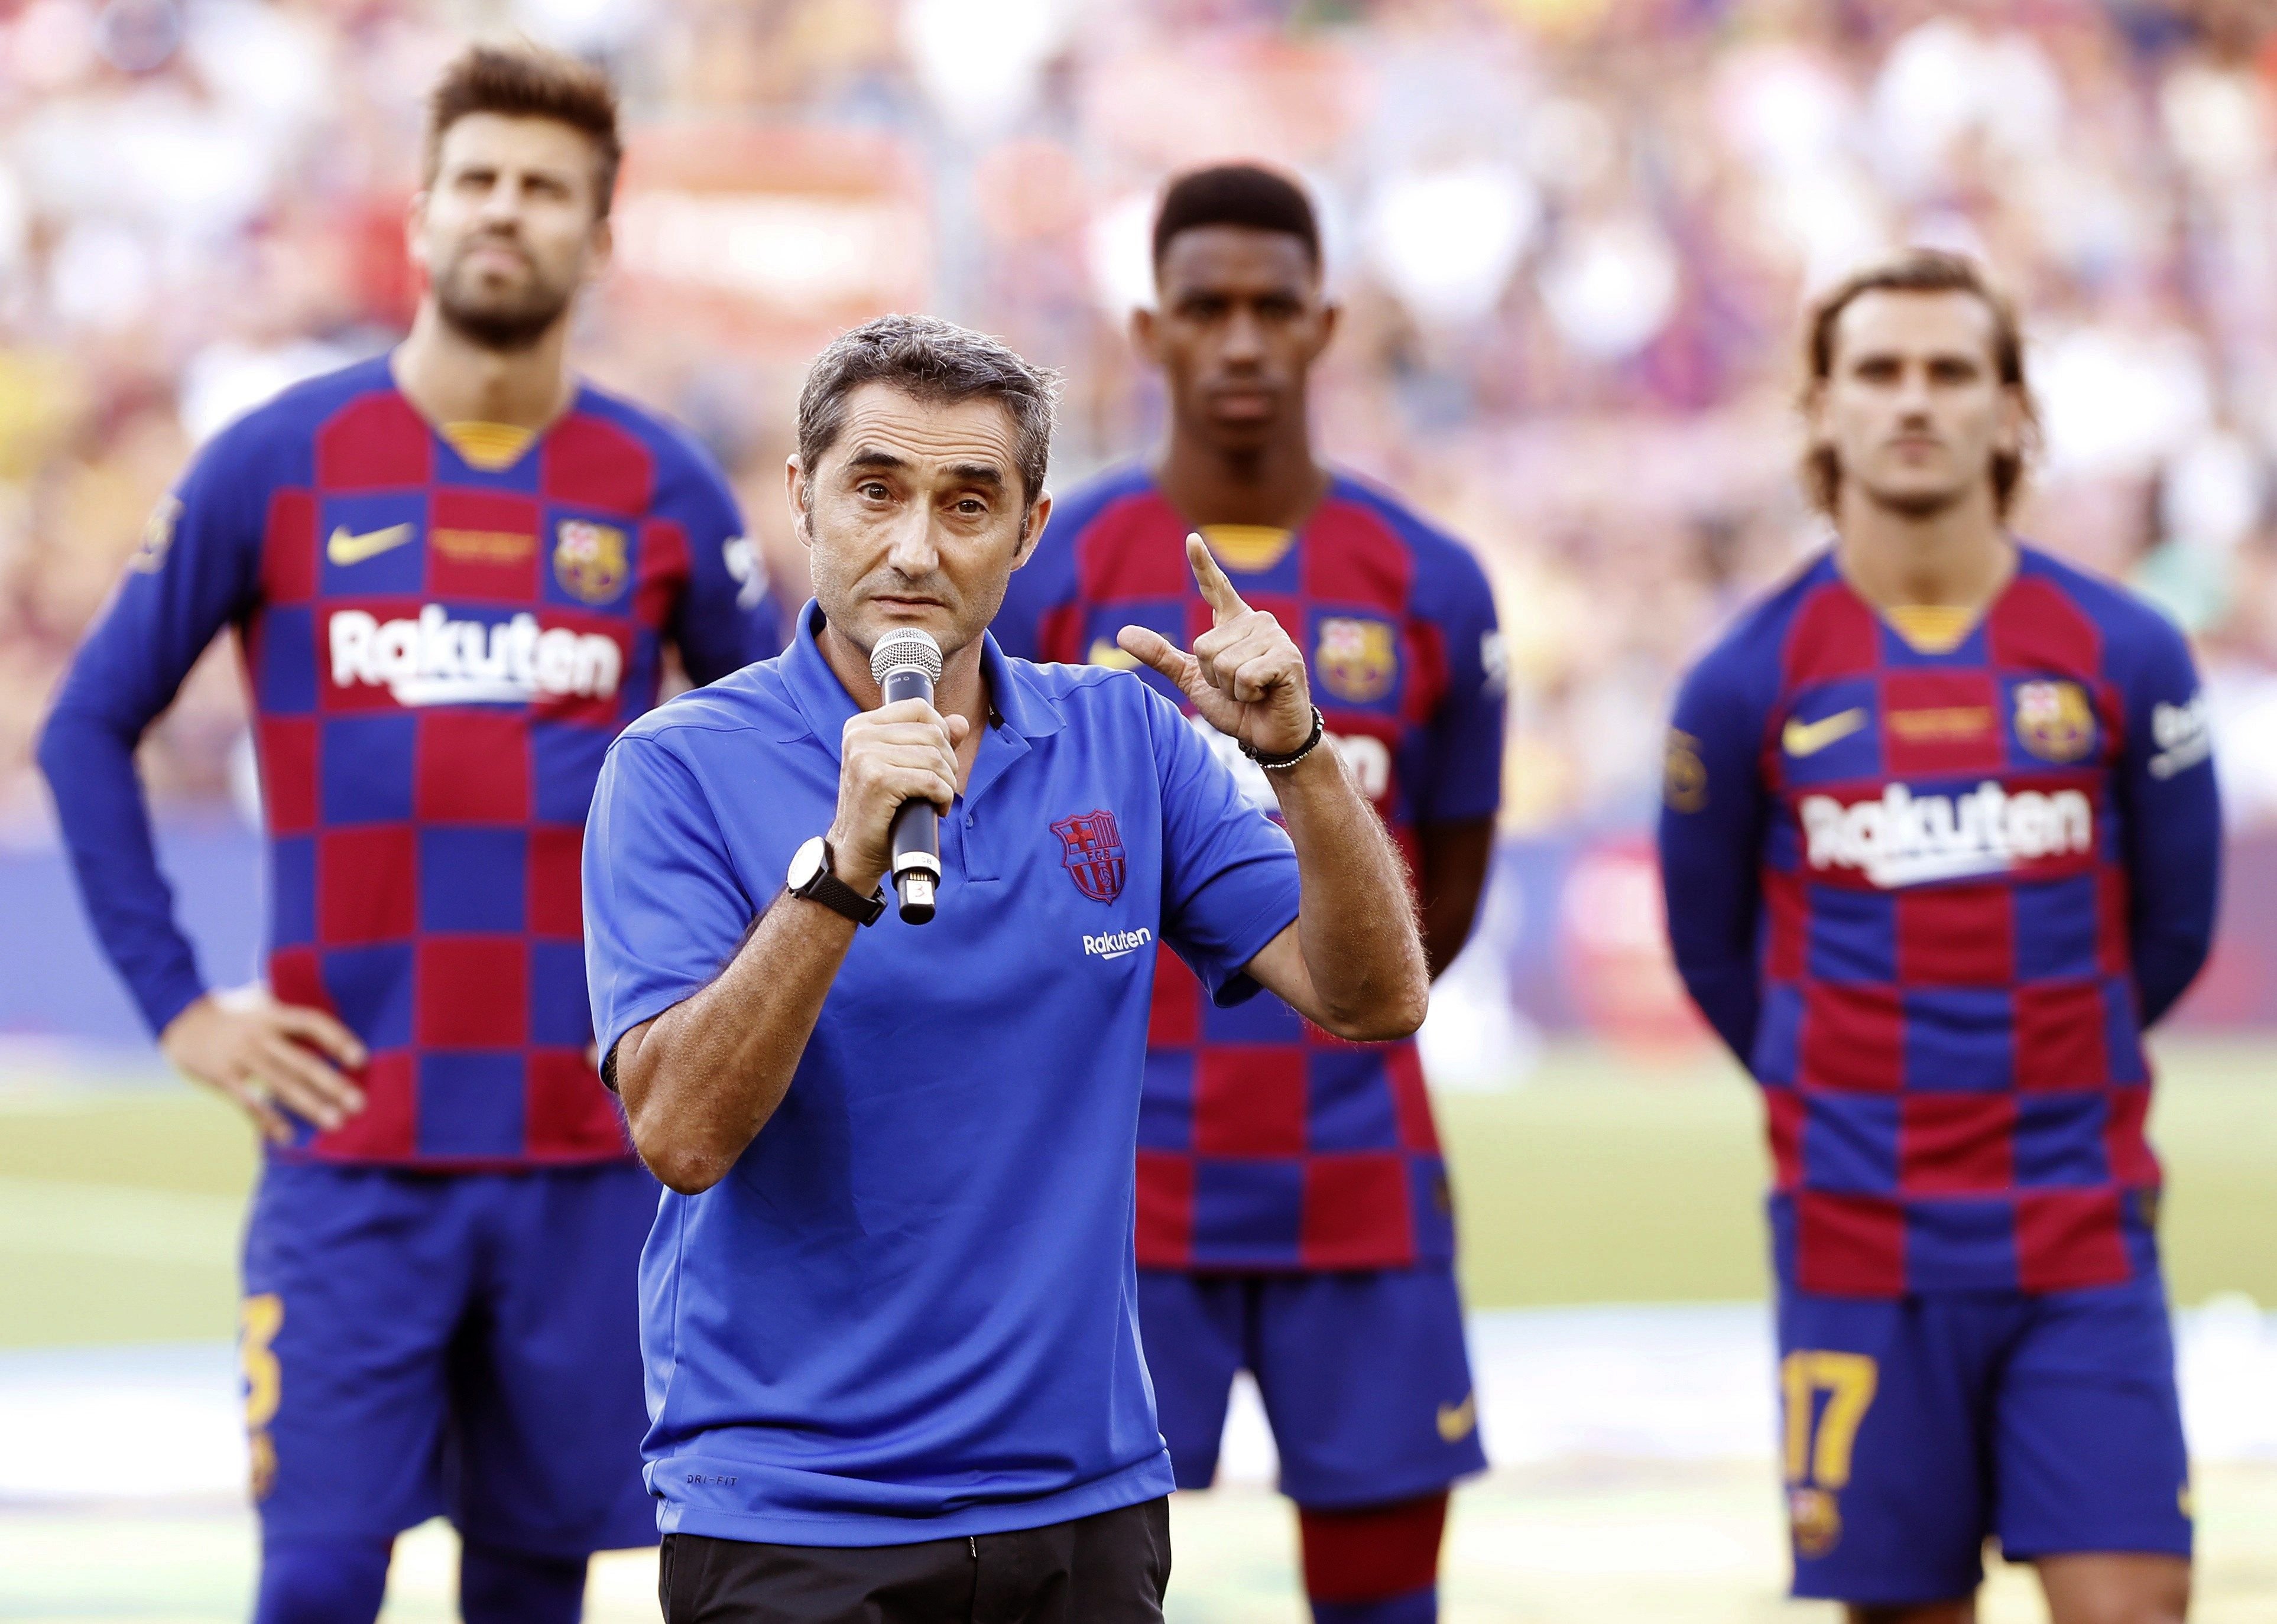 Valverde, qüestionat per l'afició, s'encomana al talent dels seus homes